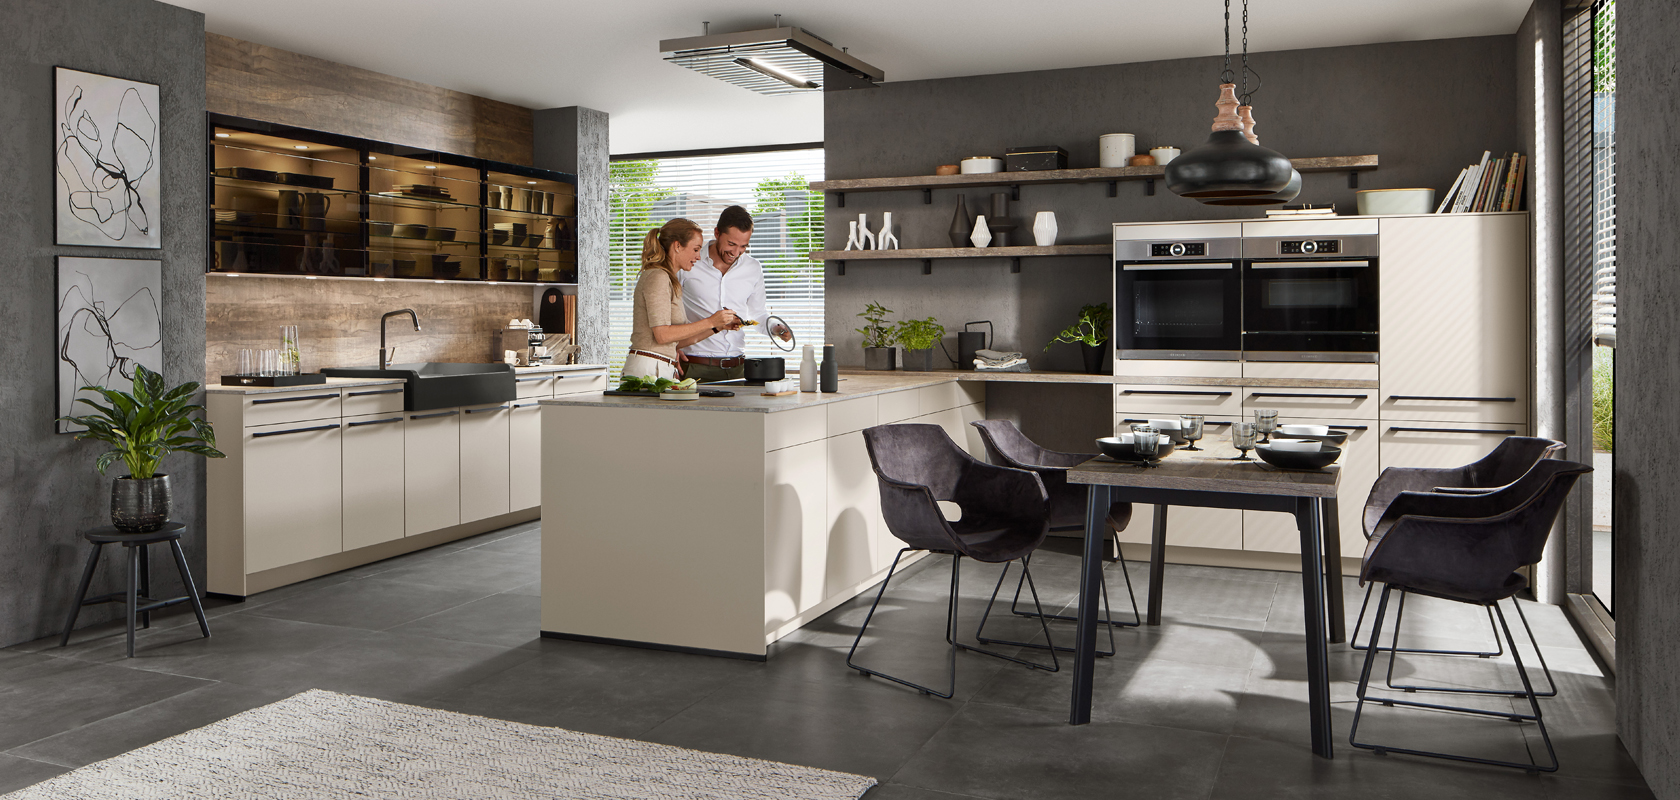 Una cucina moderna e elegante con una coppia che cucina insieme, con mobili eleganti, elettrodomestici in acciaio inossidabile e un'area pranzo accogliente con piante in vaso.